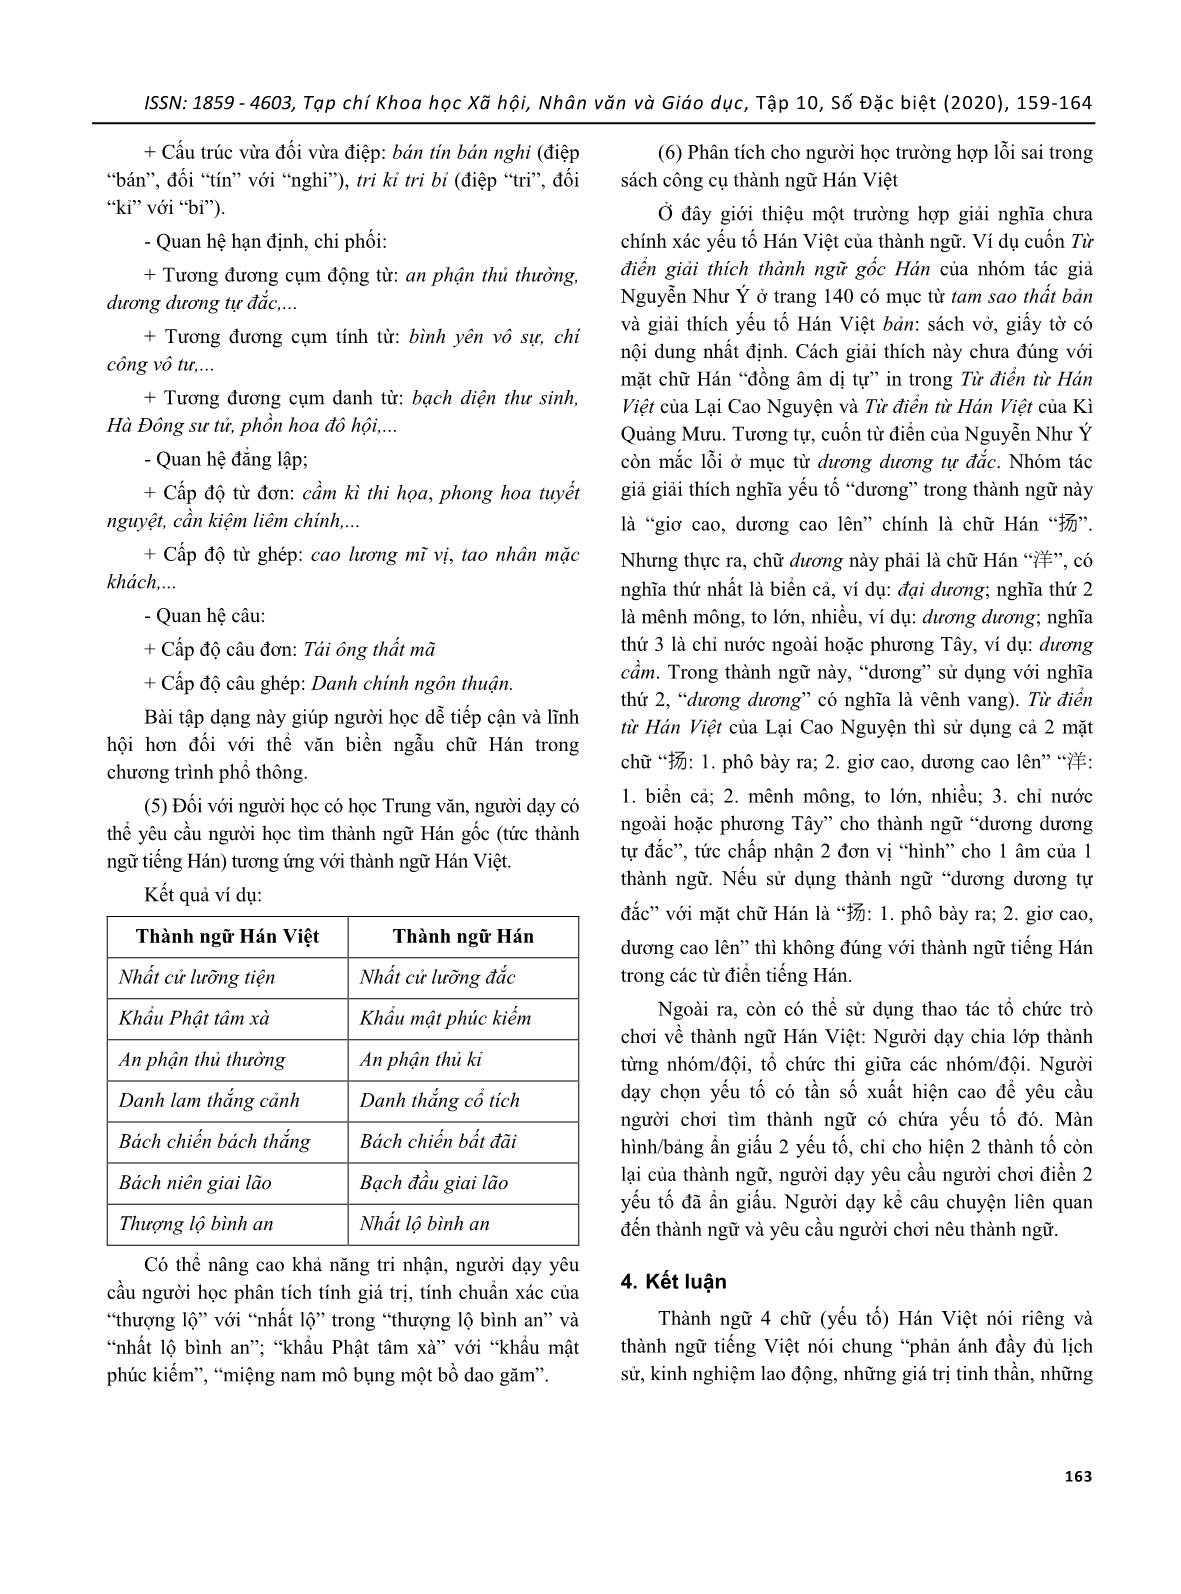 Đề xuất một số thao tác dạy và học yếu tố hán việt thông qua ngữ liệu thành ngữ Hán Việt trang 5